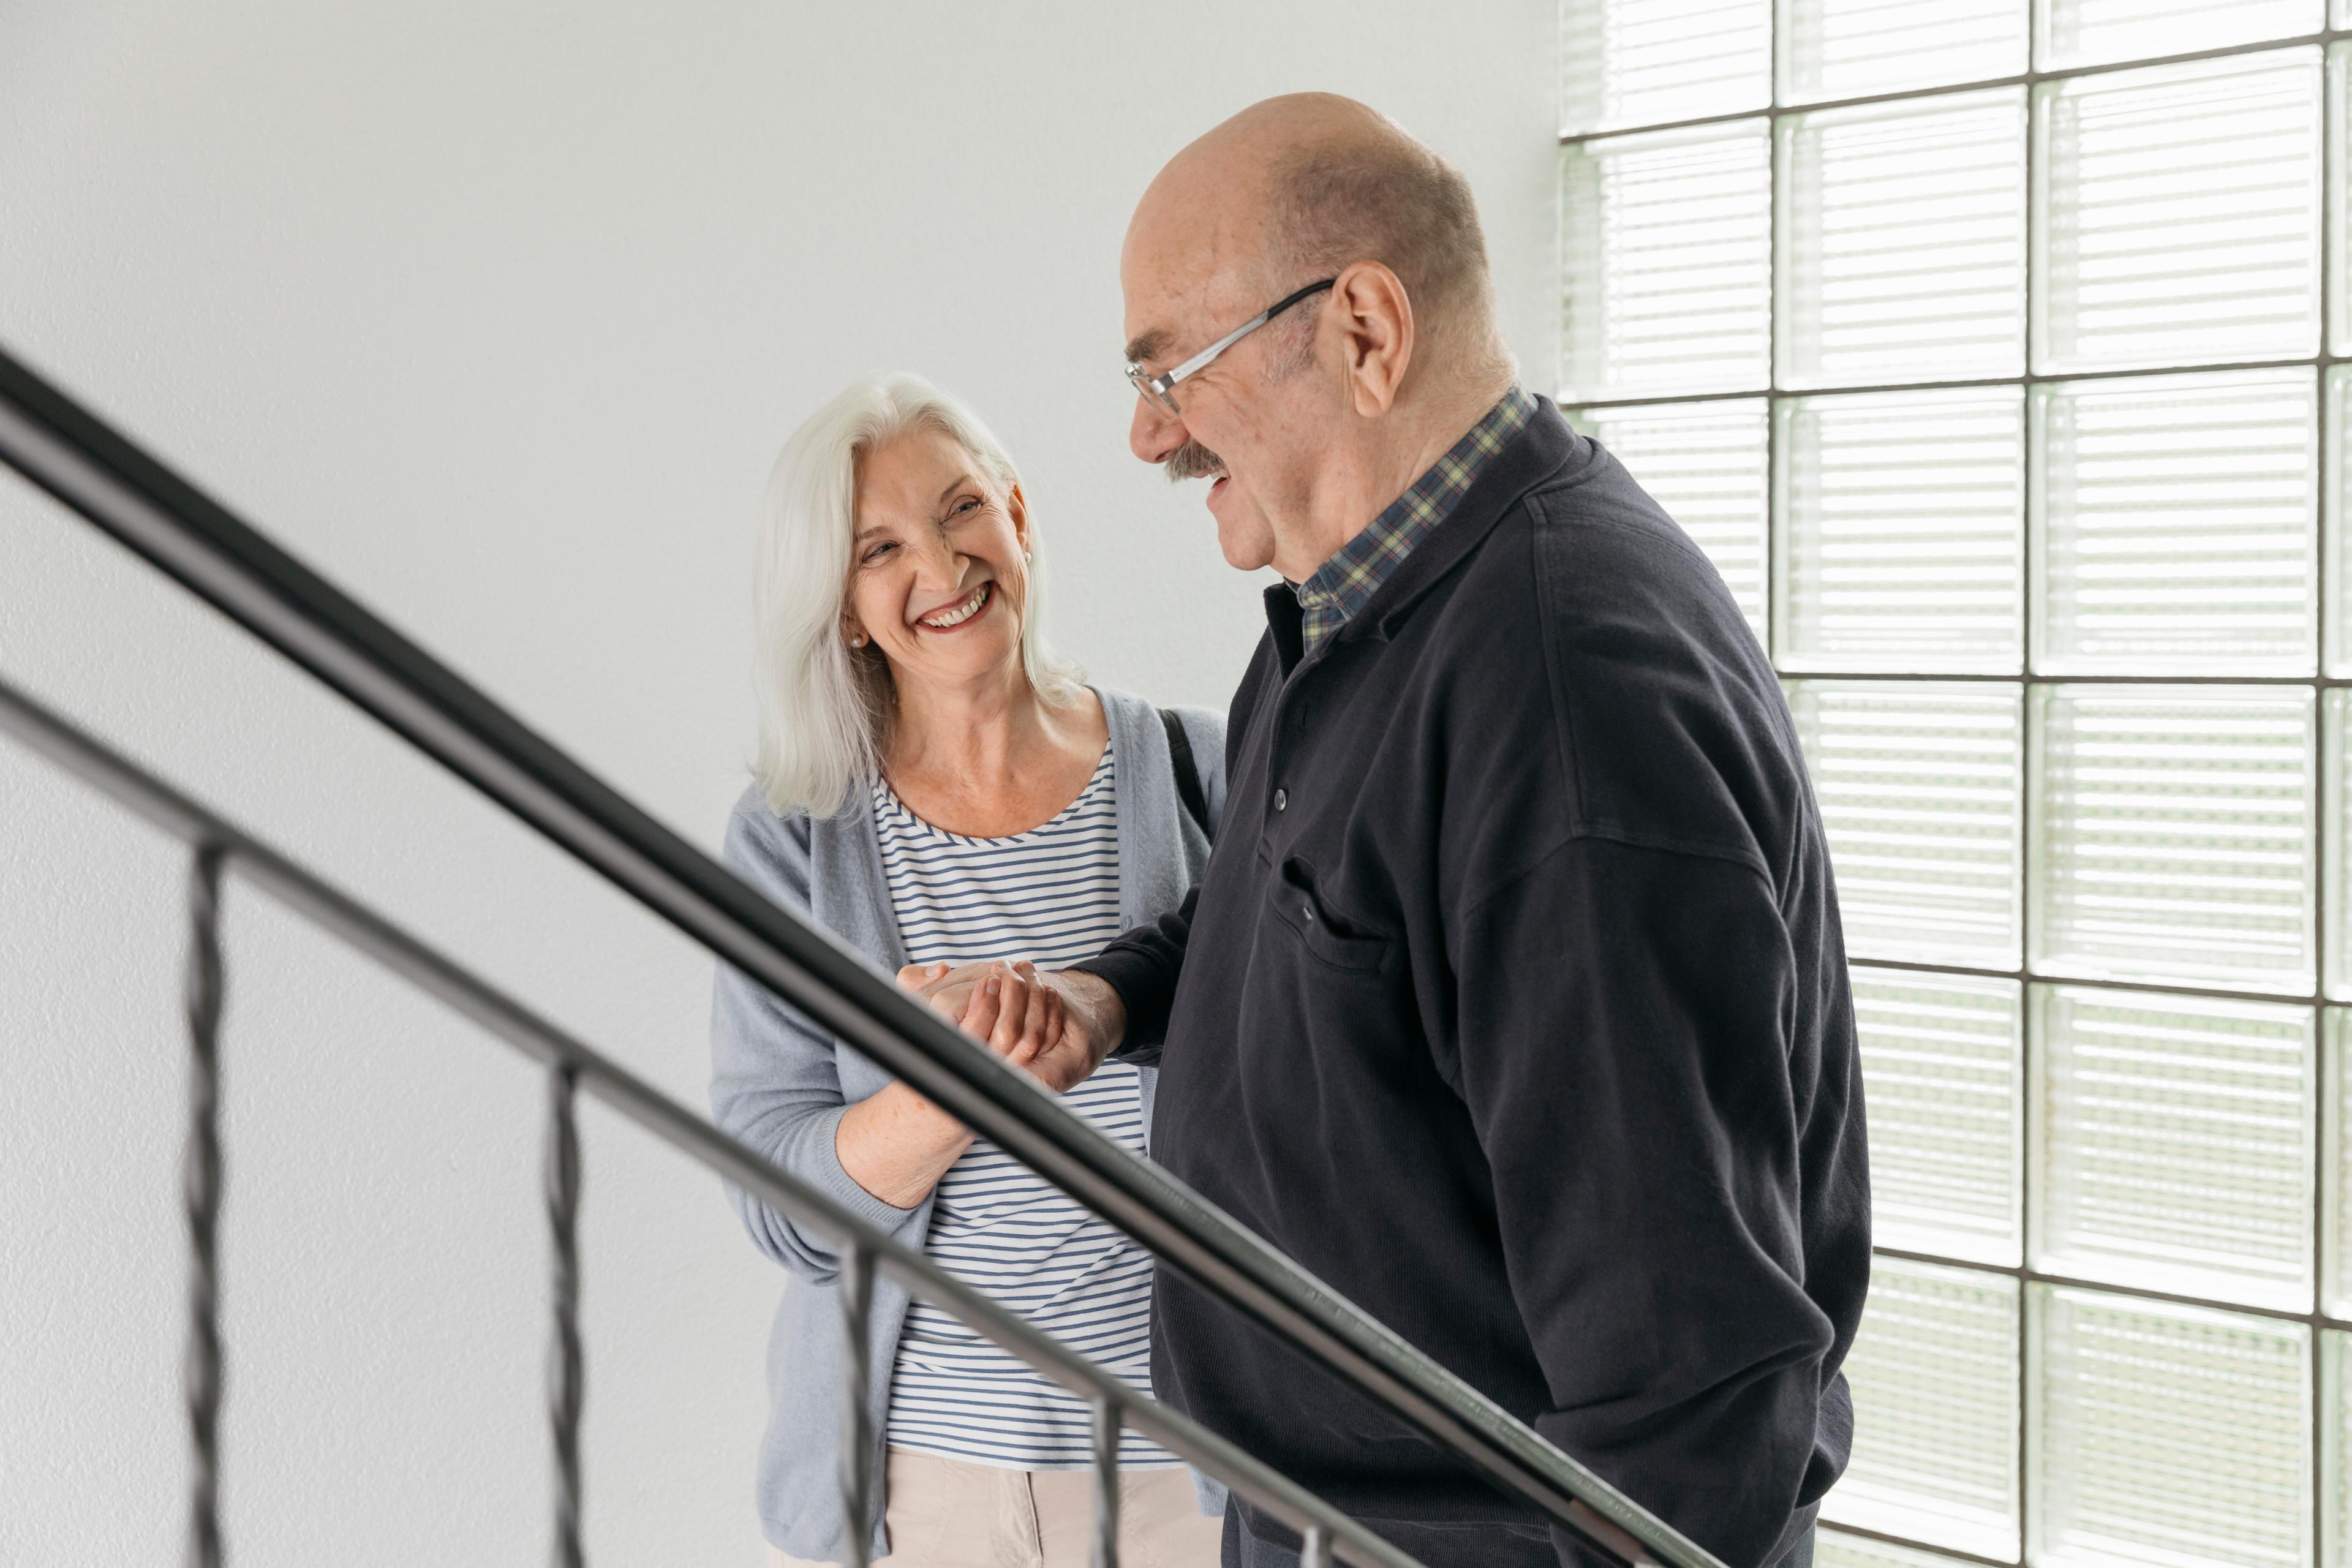 Fahrdienst: Eine ältere Frau und ein älterer Herr stehen im Treppenhaus und gehen die Treppe herunter. Die Frau stütz den Mann am Arm. Sie lachen sich beide an.